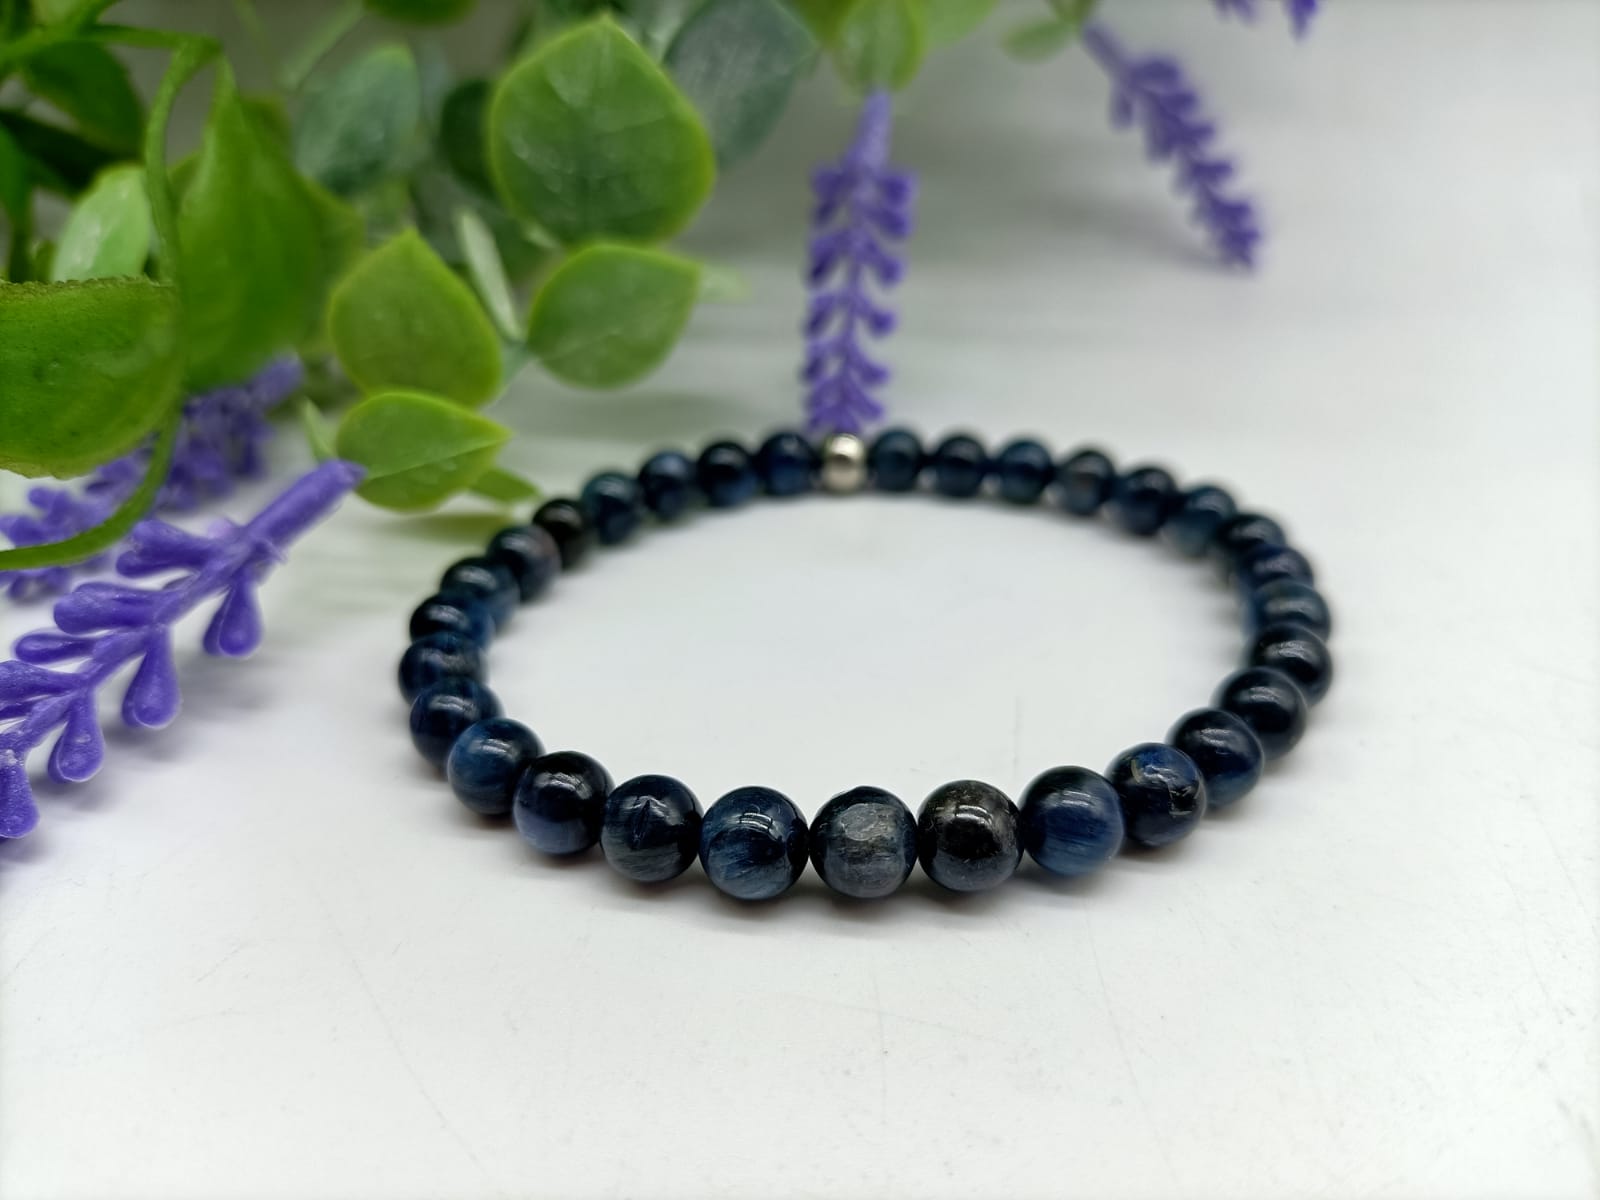 Blue Kyanite Beads Bracelet Crystal Wellness